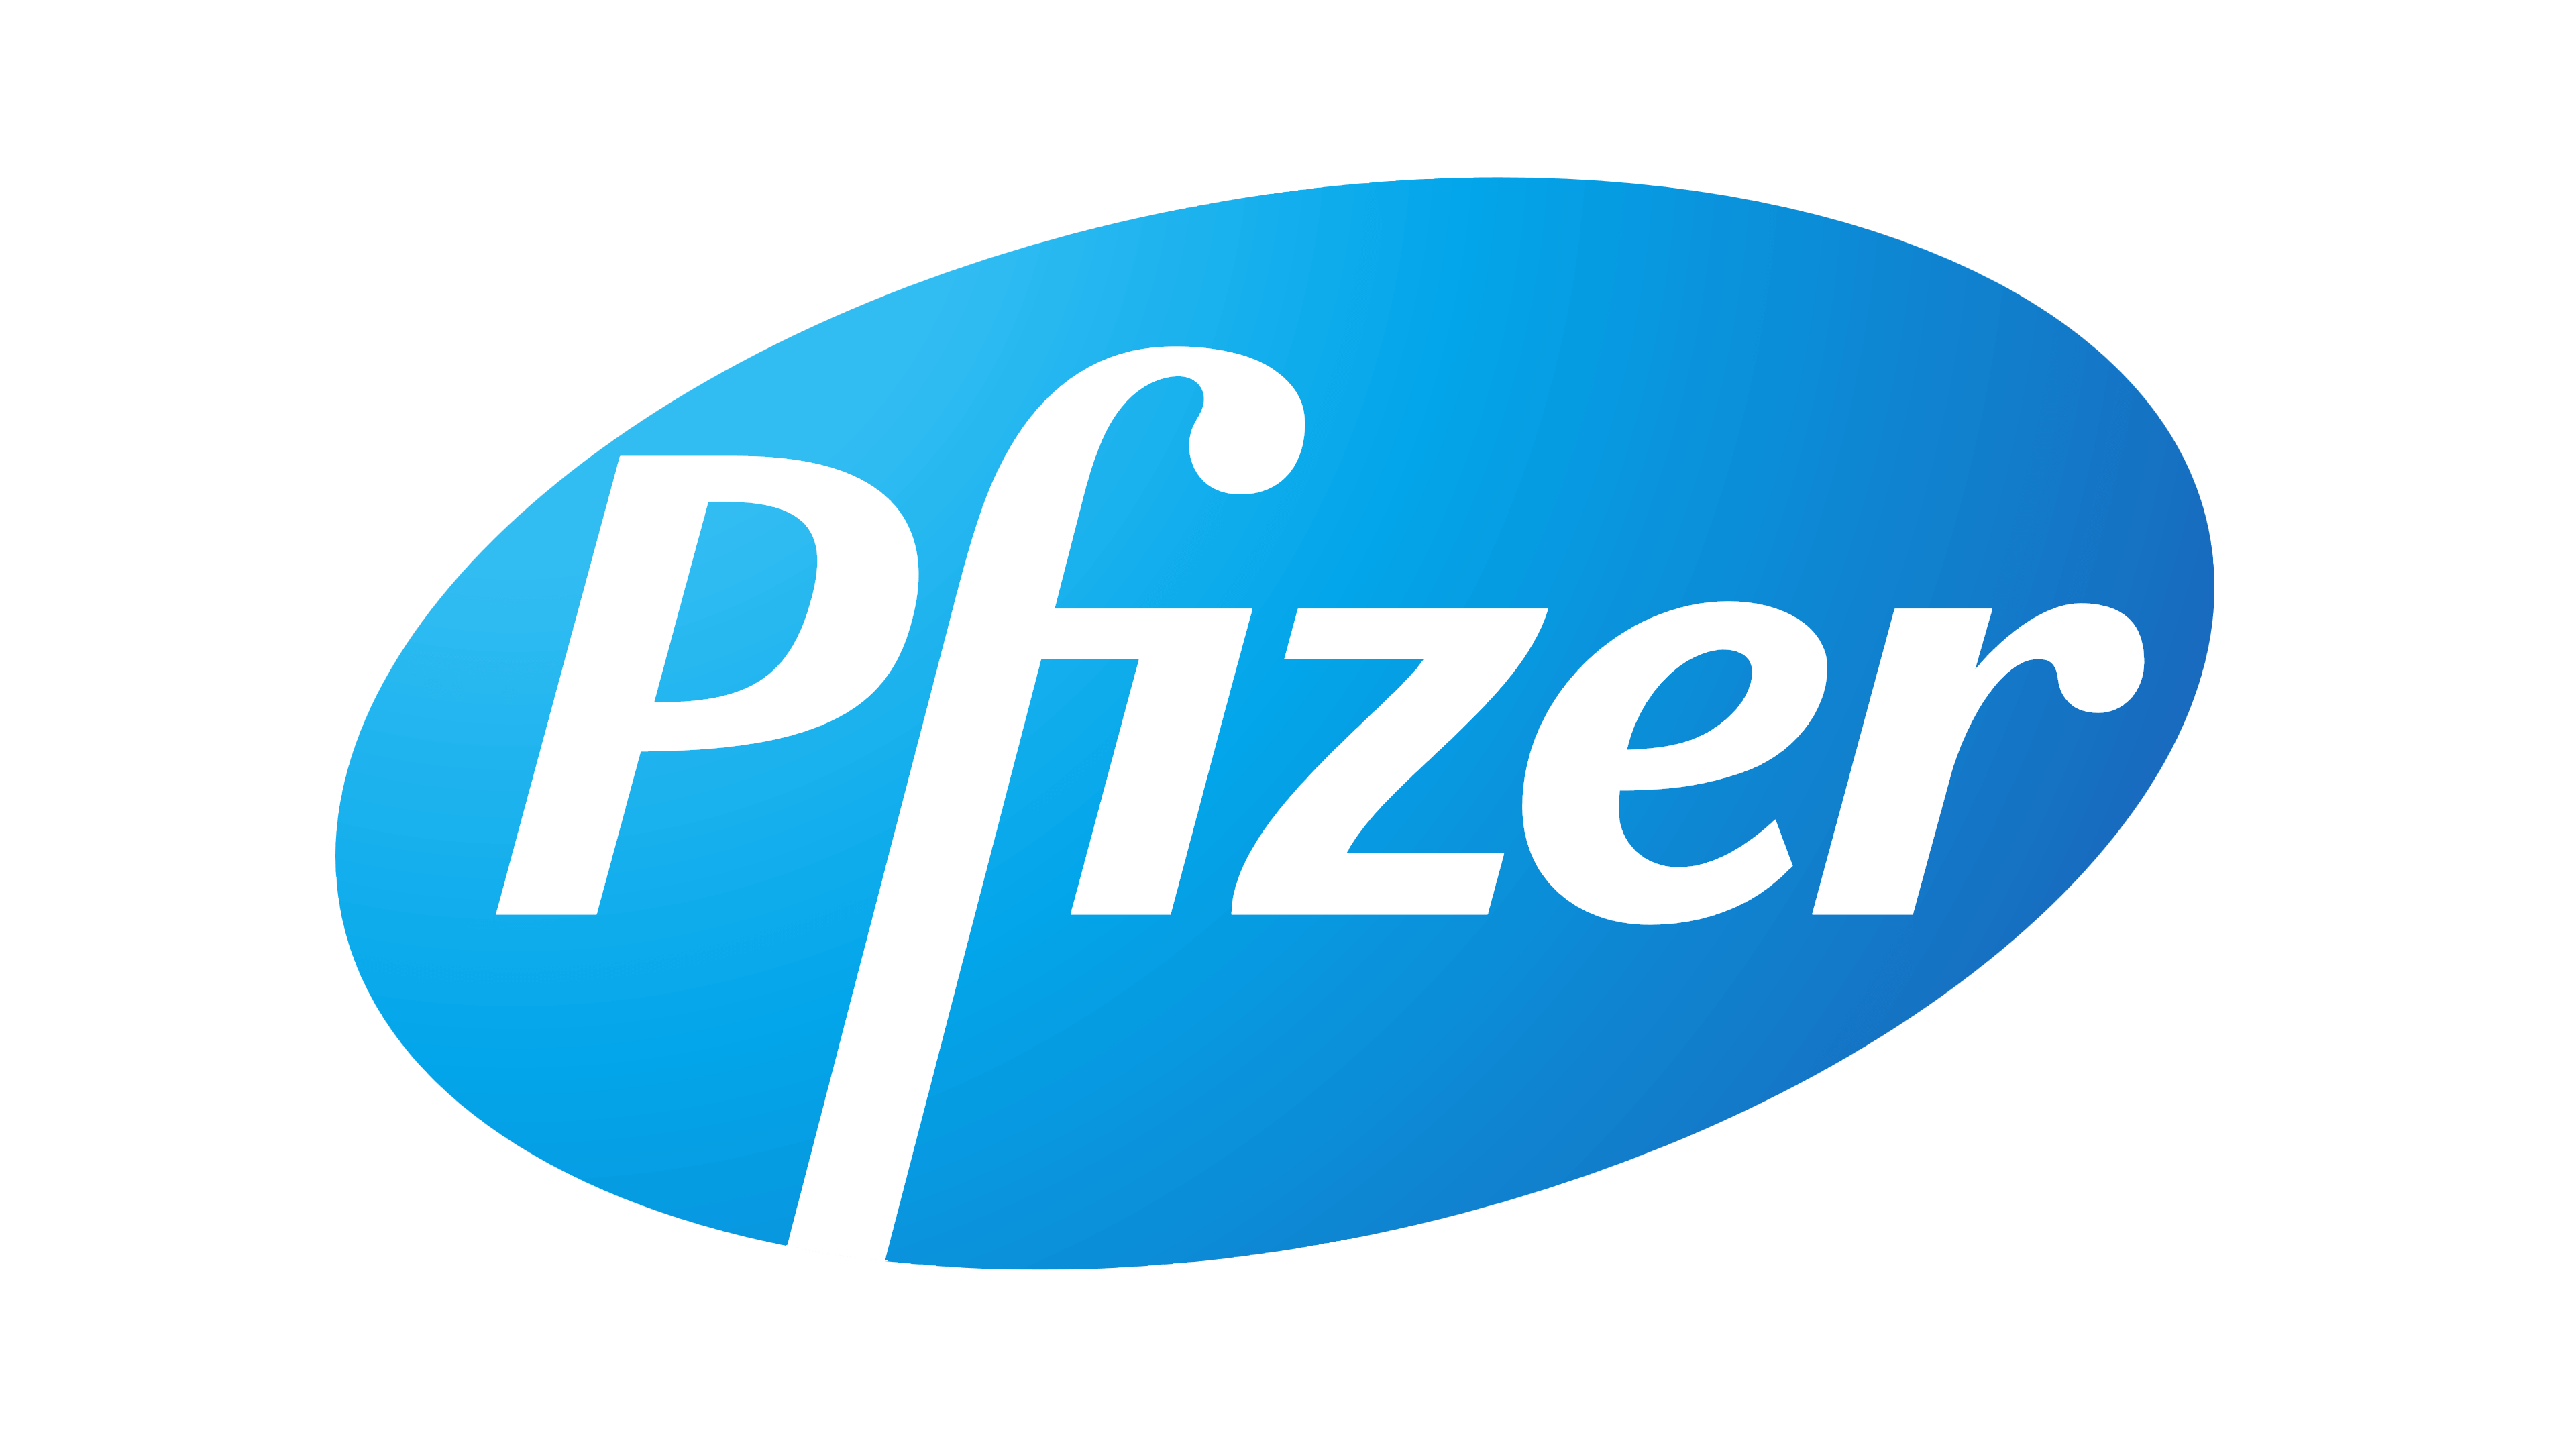 Pfizer-logo_0.png